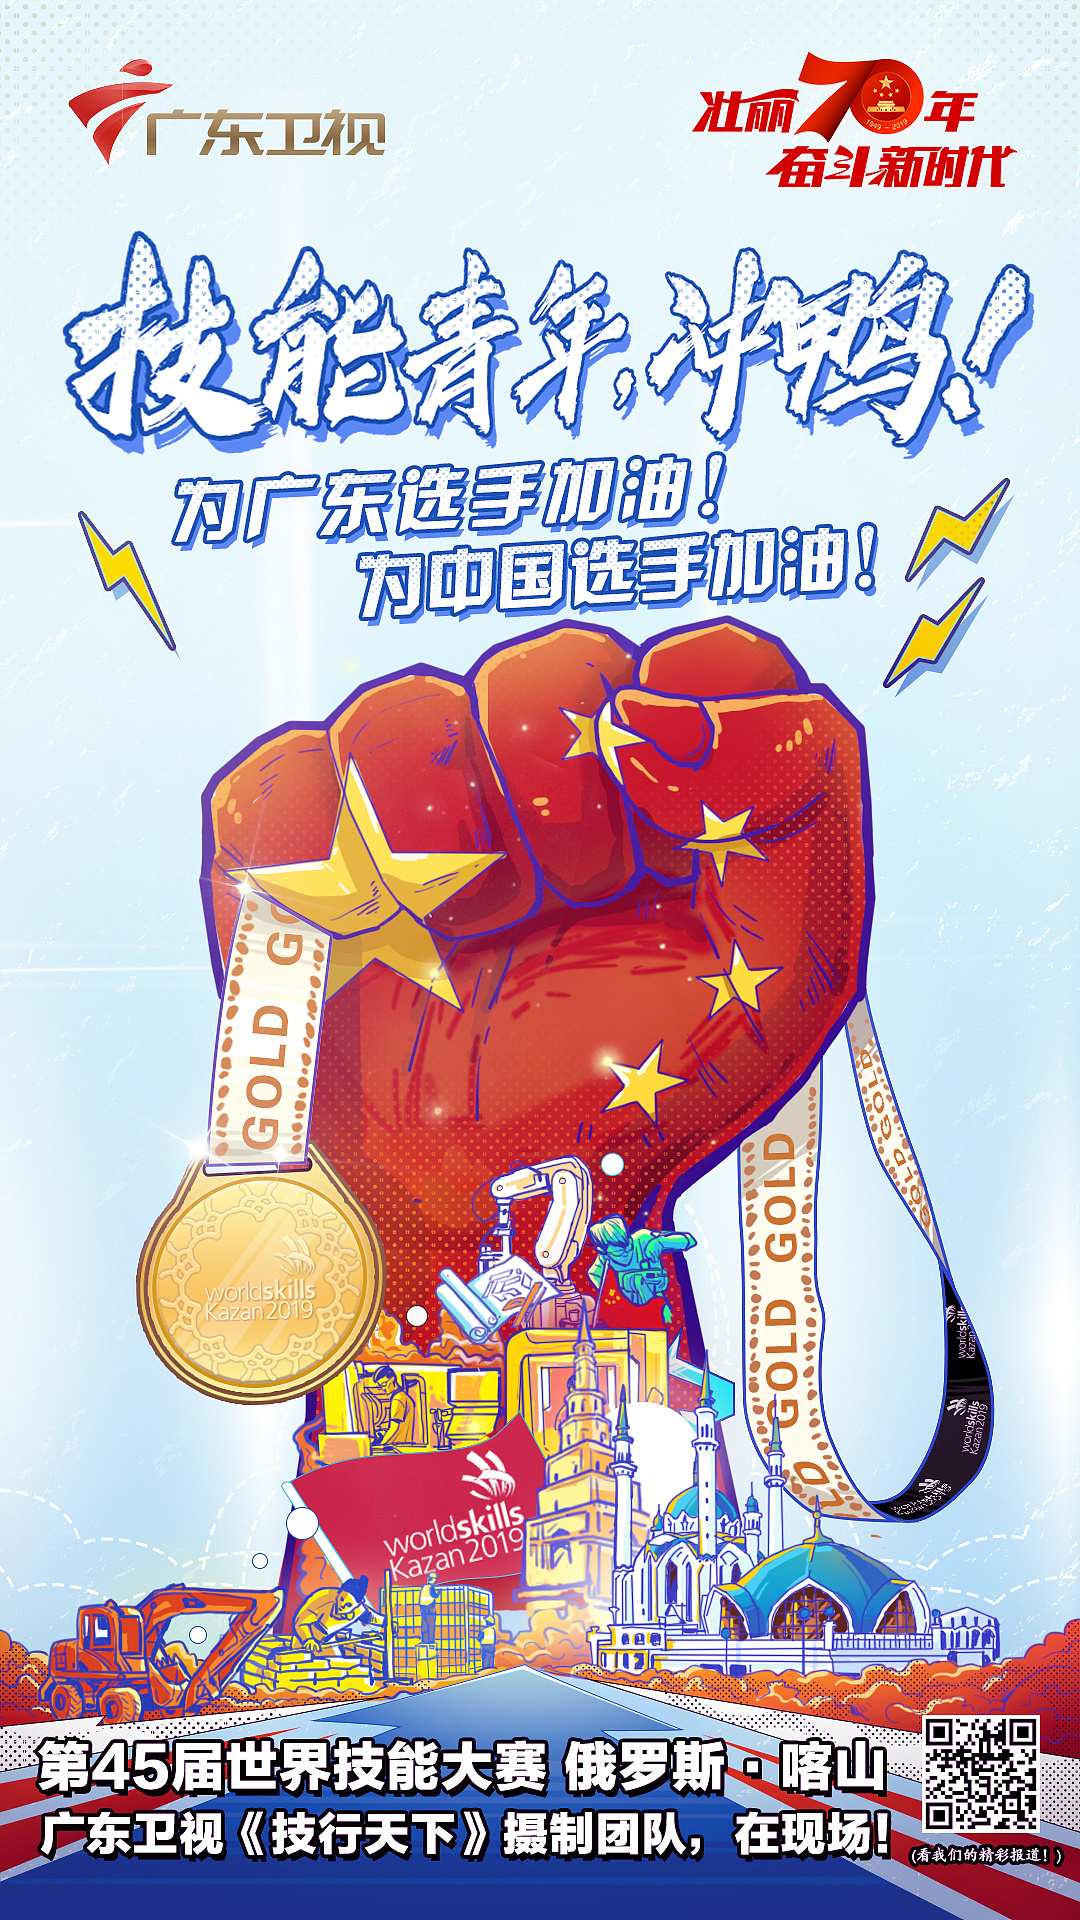 第45届世界技能大赛助力海报《技能青年,冲鸭!》